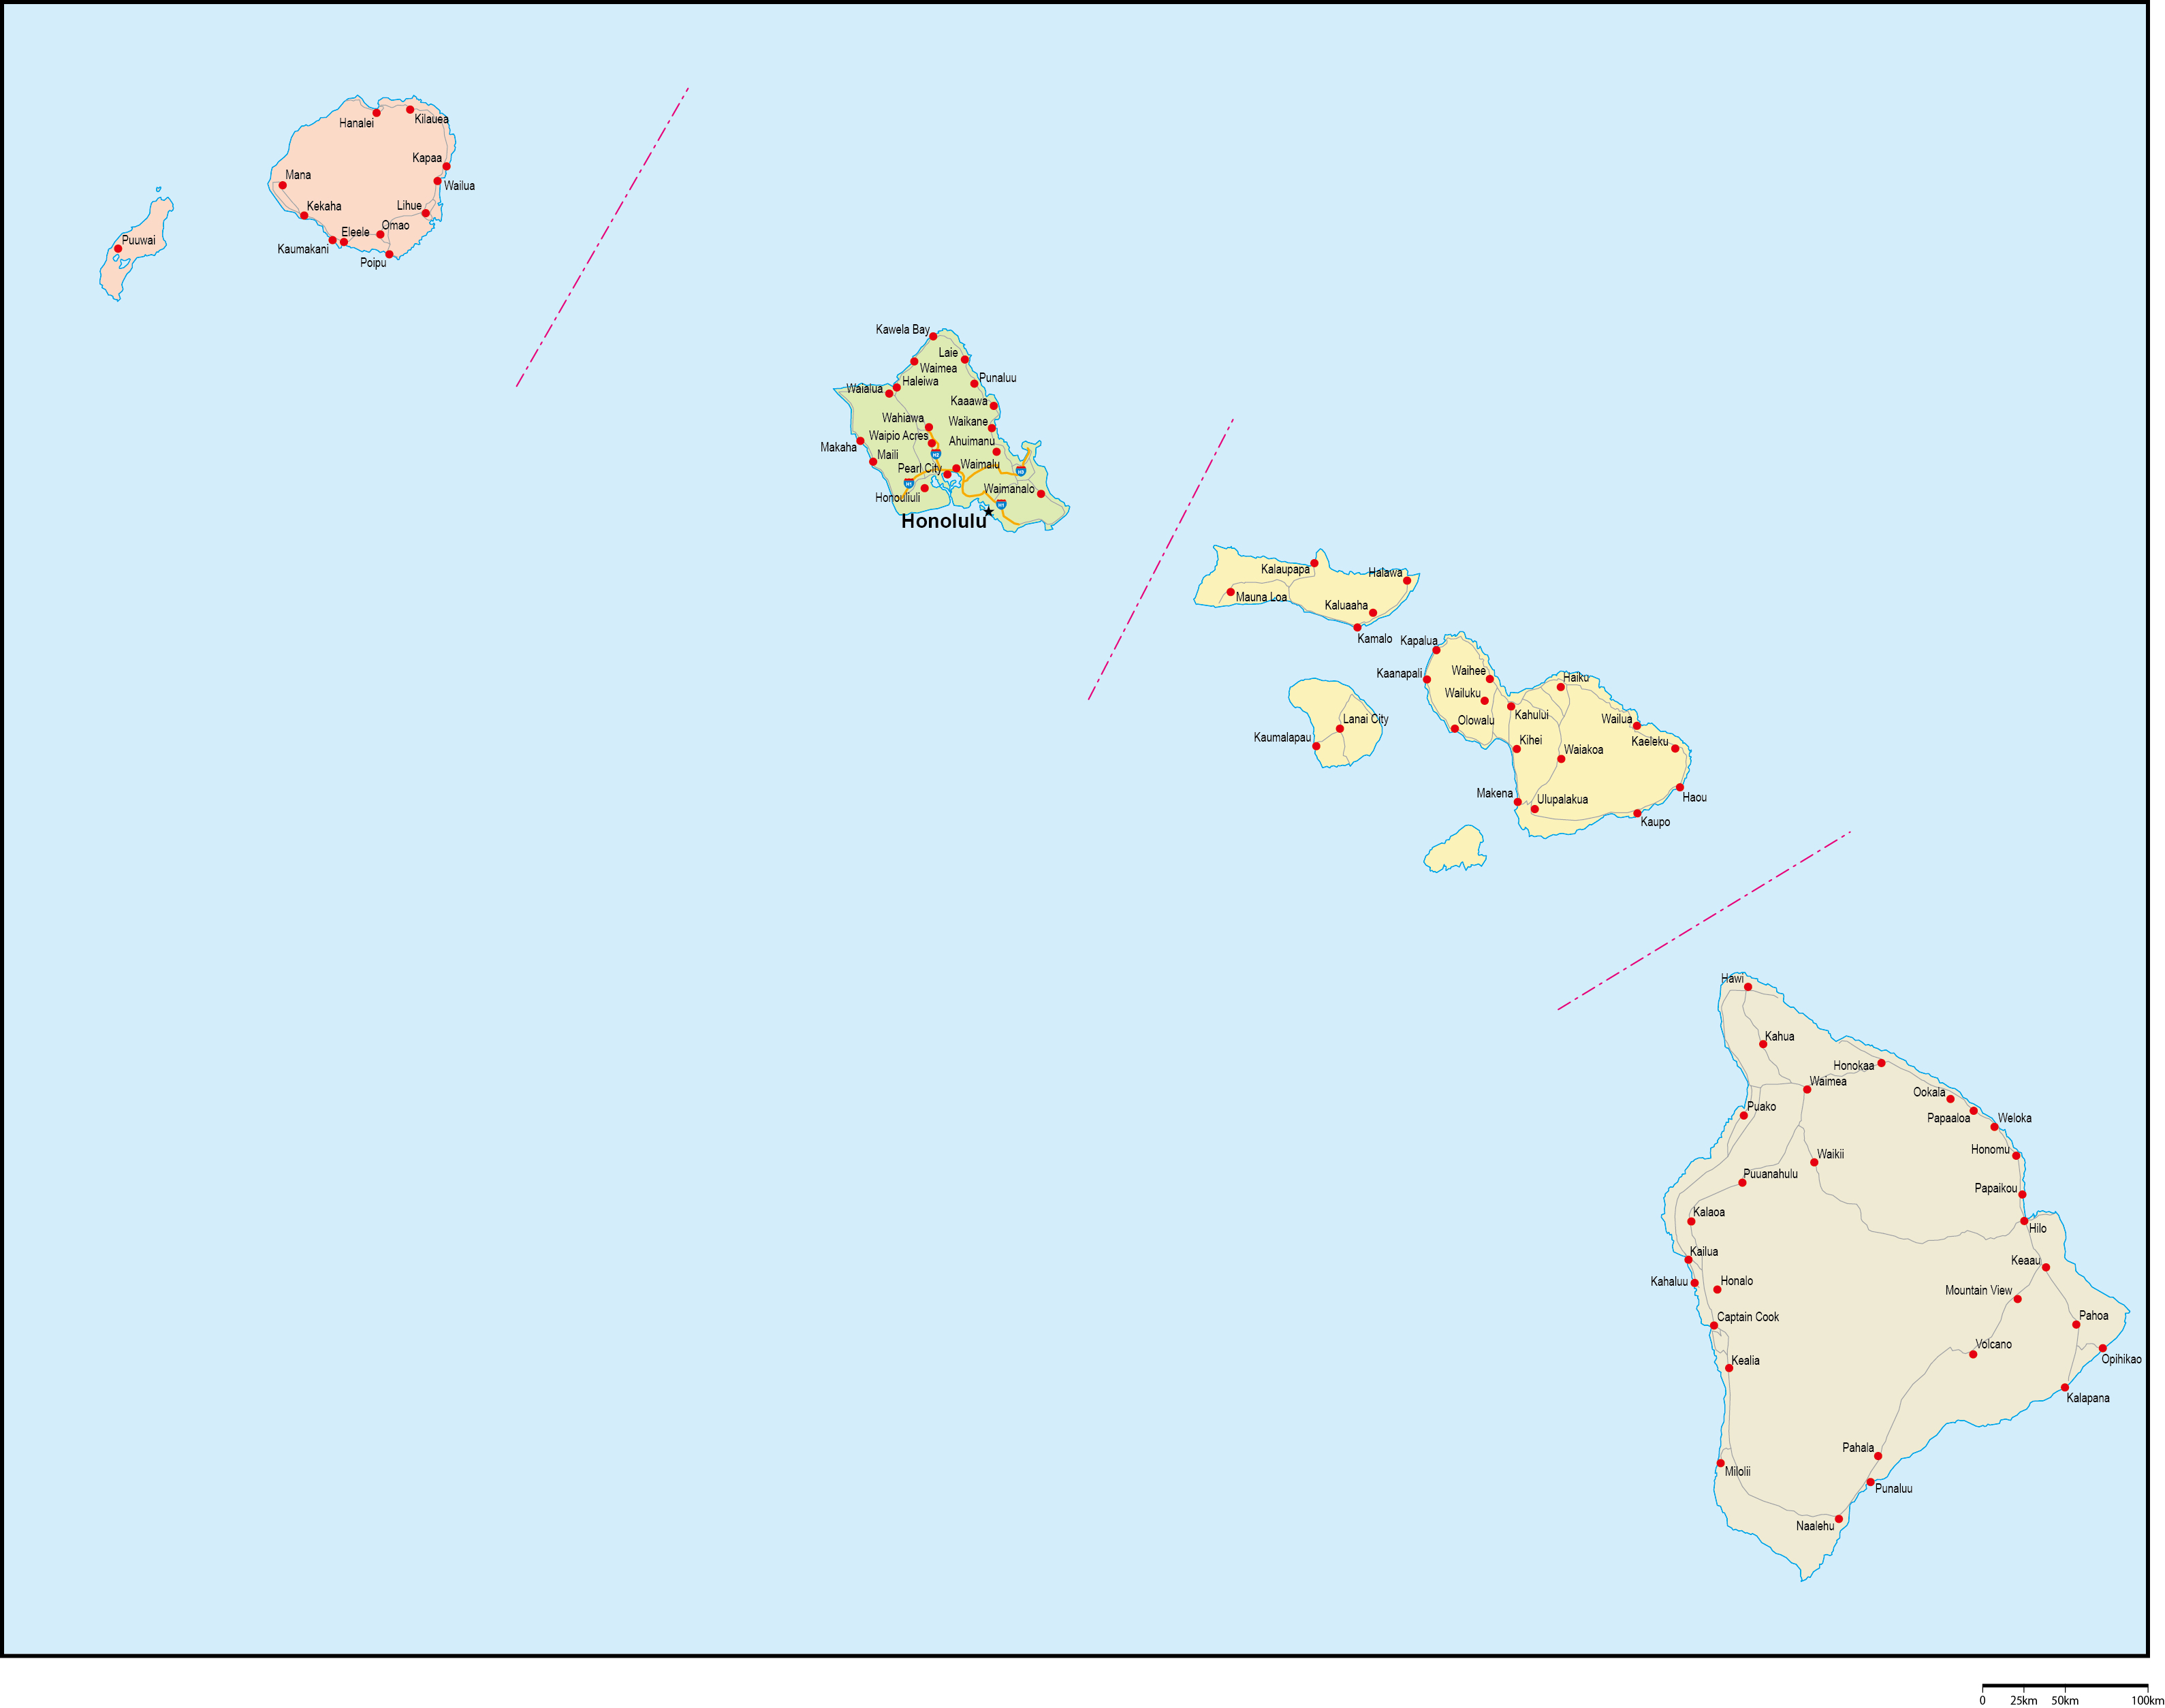 ハワイ州郡色分け地図州都・主な都市・道路あり(英語)フリーデータの画像